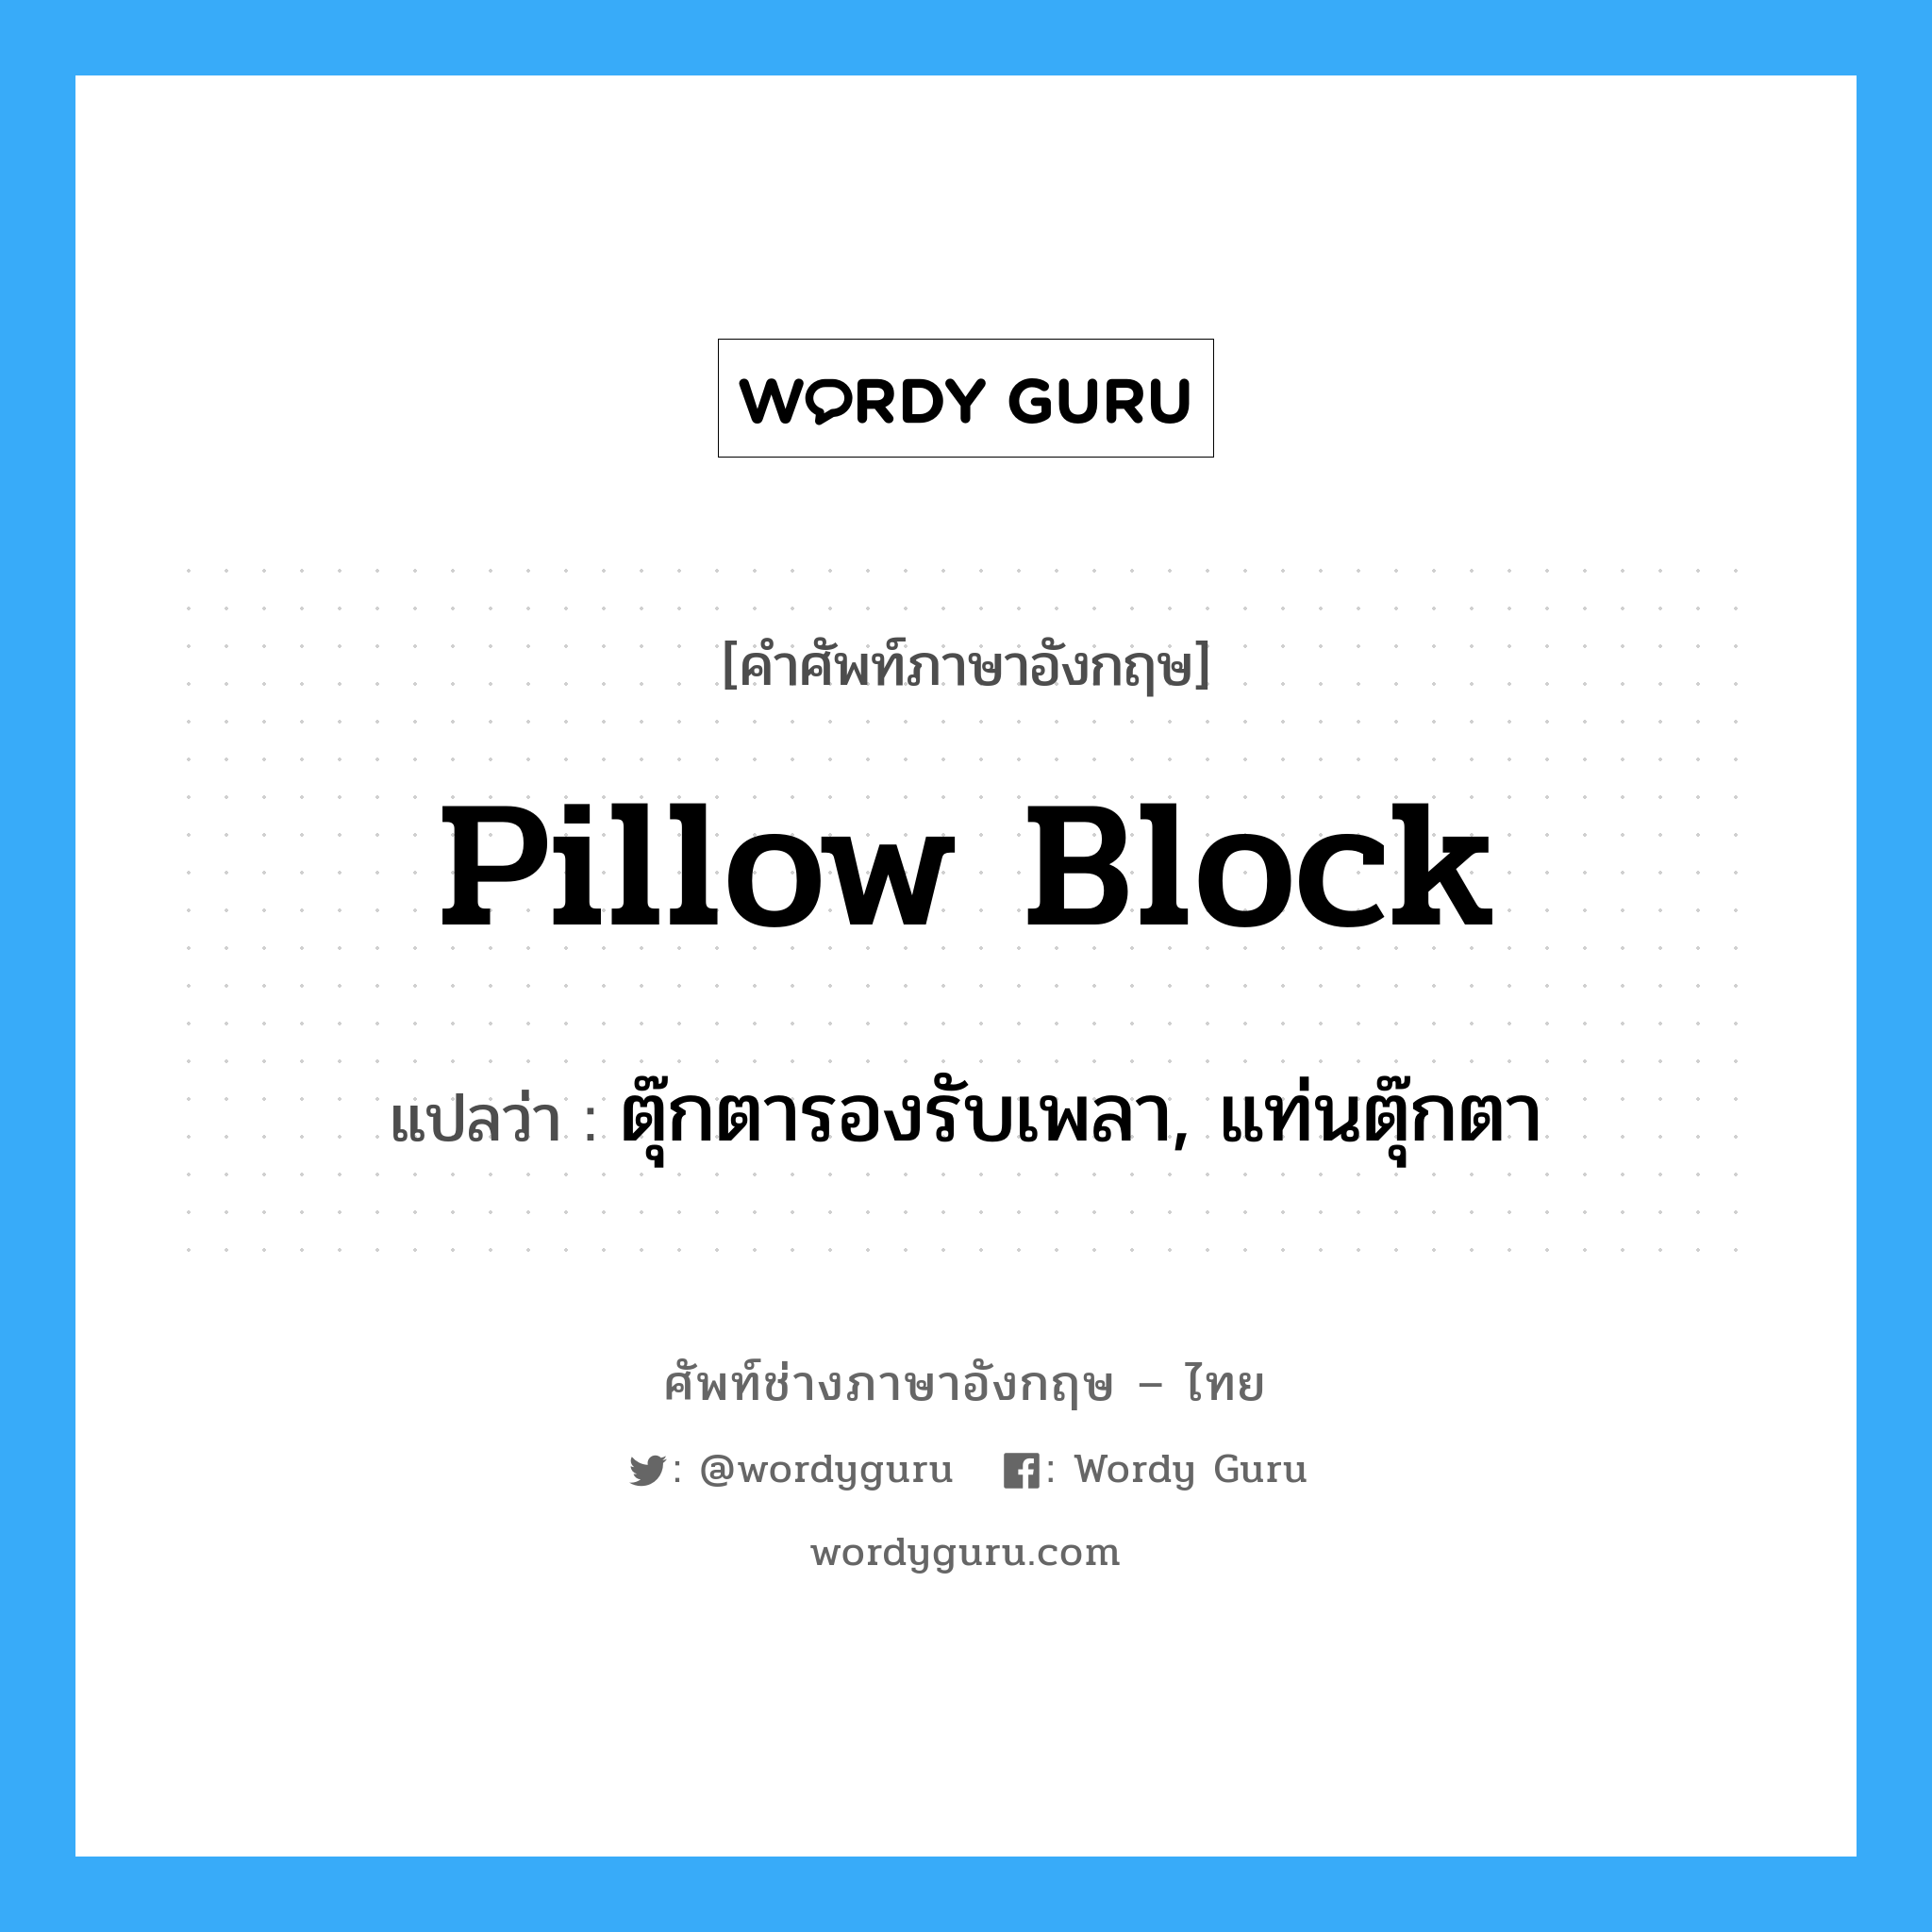 pillow block แปลว่า?, คำศัพท์ช่างภาษาอังกฤษ - ไทย pillow block คำศัพท์ภาษาอังกฤษ pillow block แปลว่า ตุ๊กตารองรับเพลา, แท่นตุ๊กตา